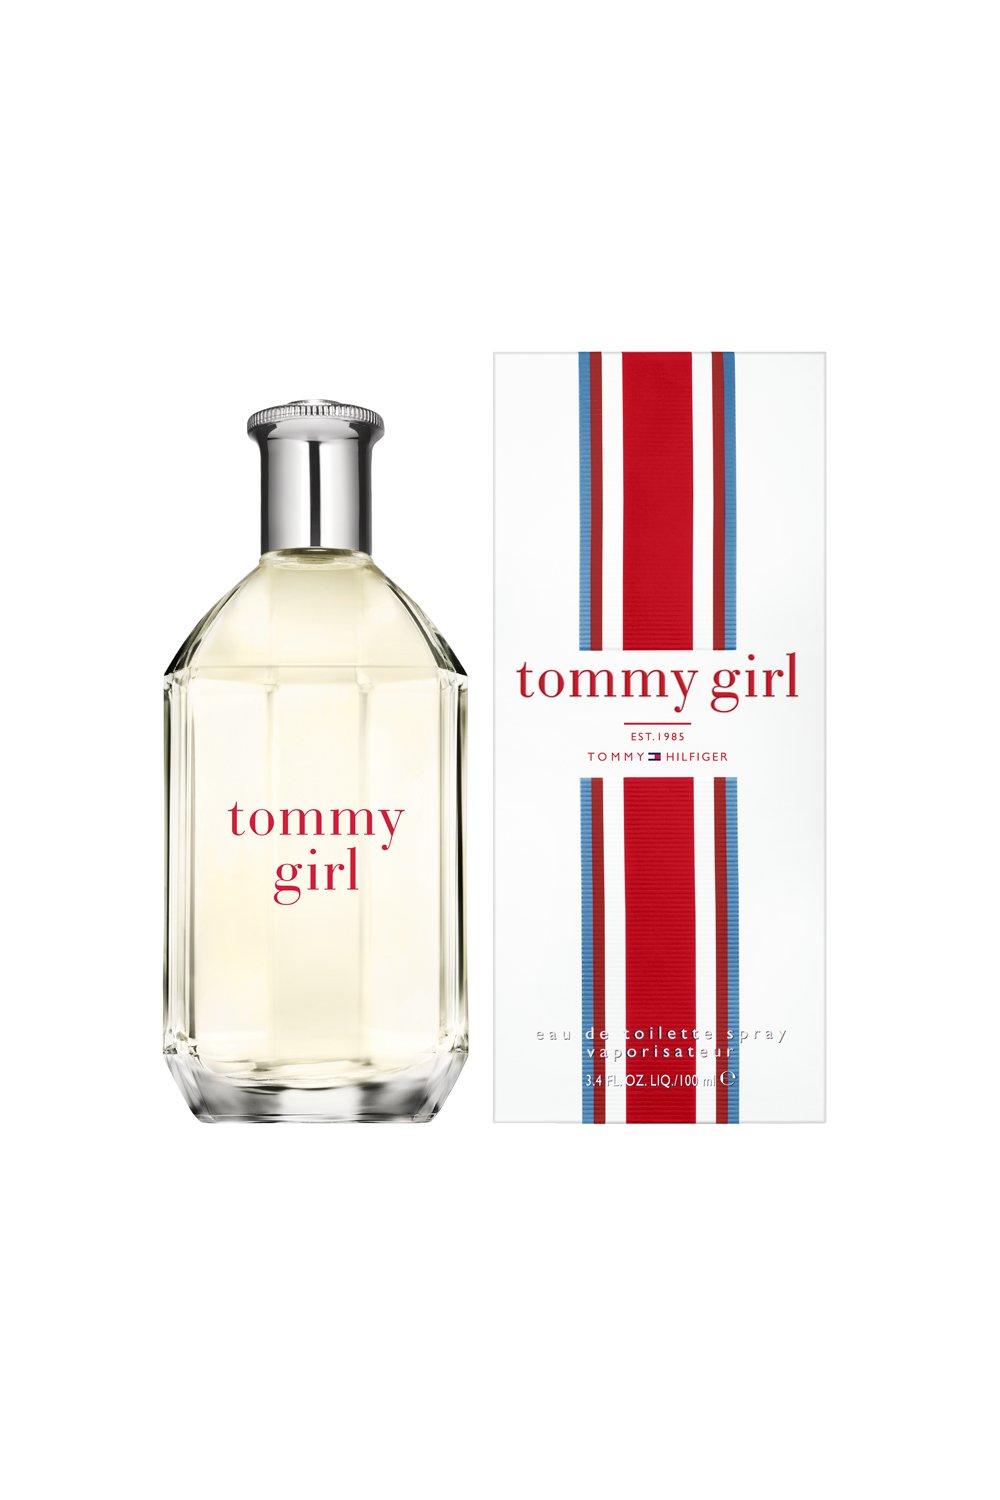 Tommy Jeans Tommy Hilfiger cologne - a fragrance for men 2003